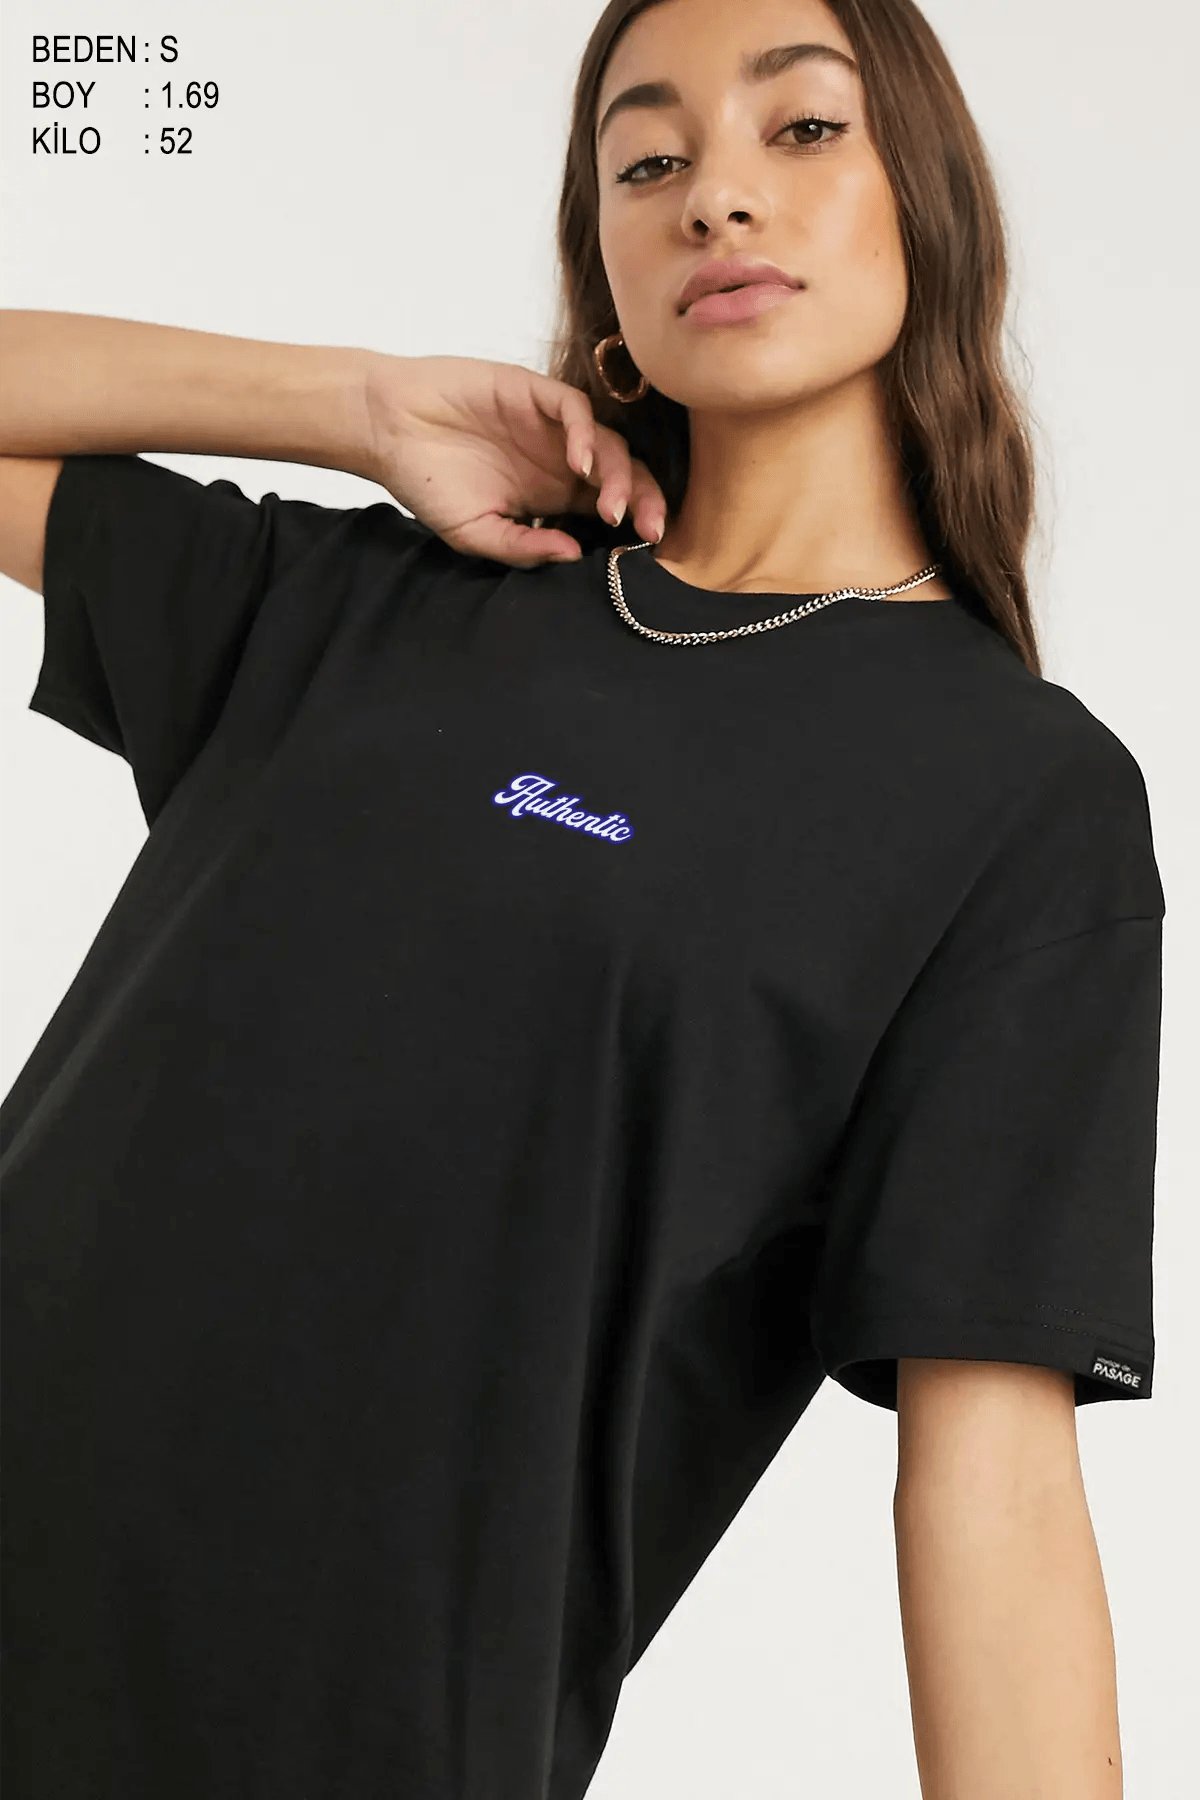 Authentic Oversize Kadın Tişört - PΛSΛGE